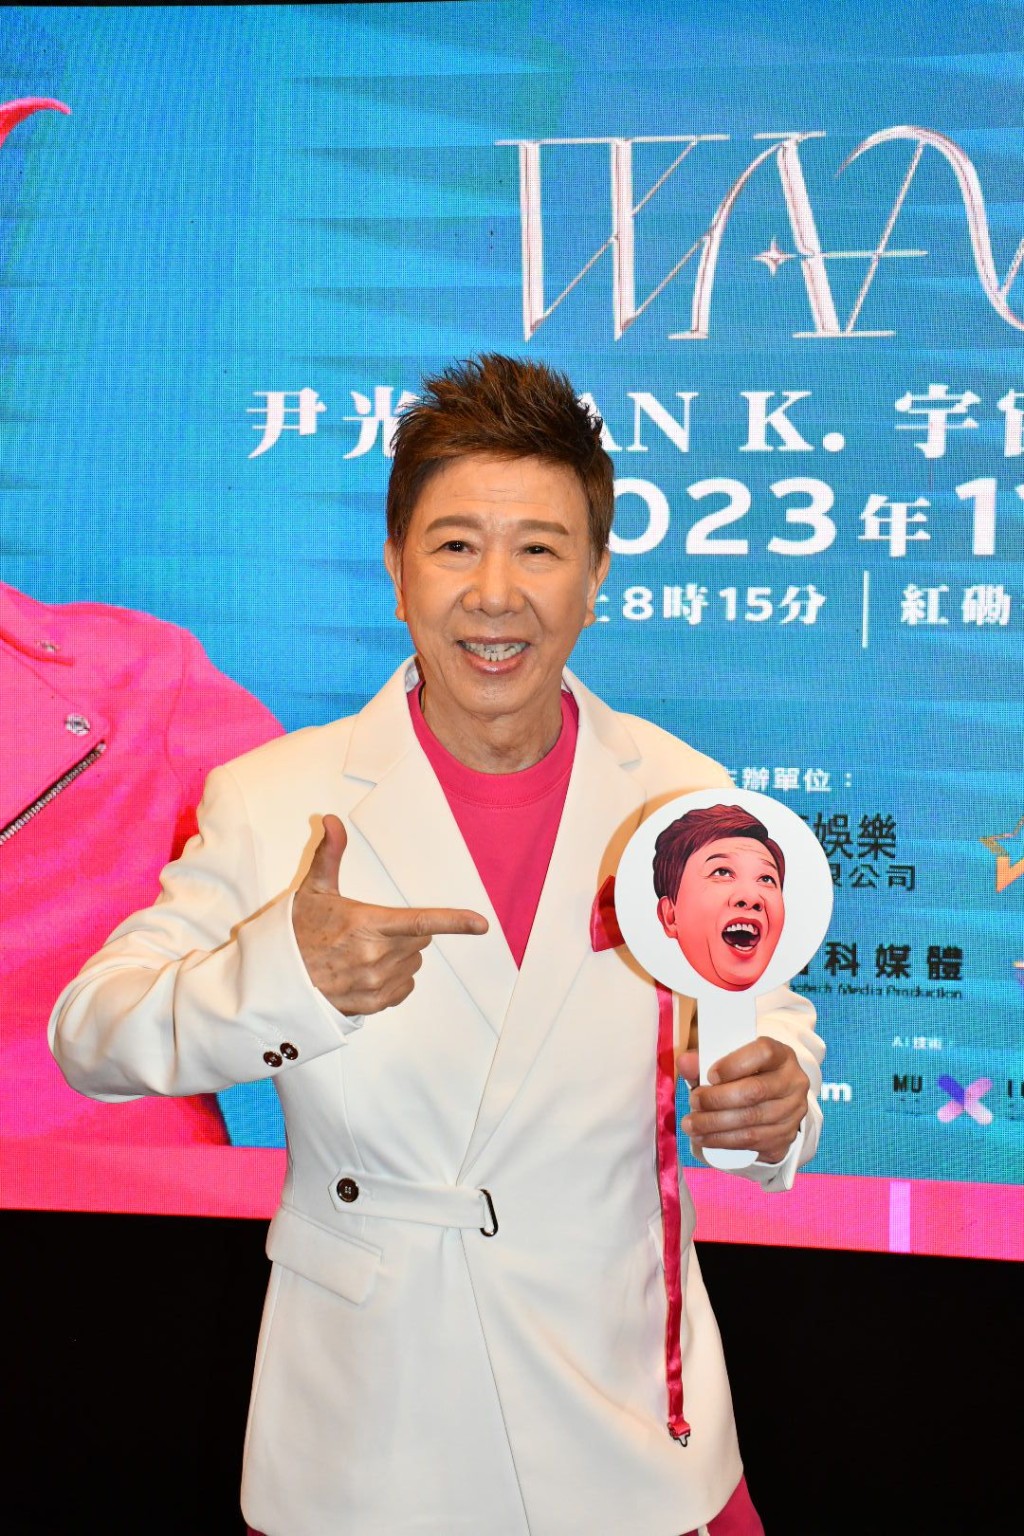 尹光成为首位香港歌手注册AI声音的艺人。